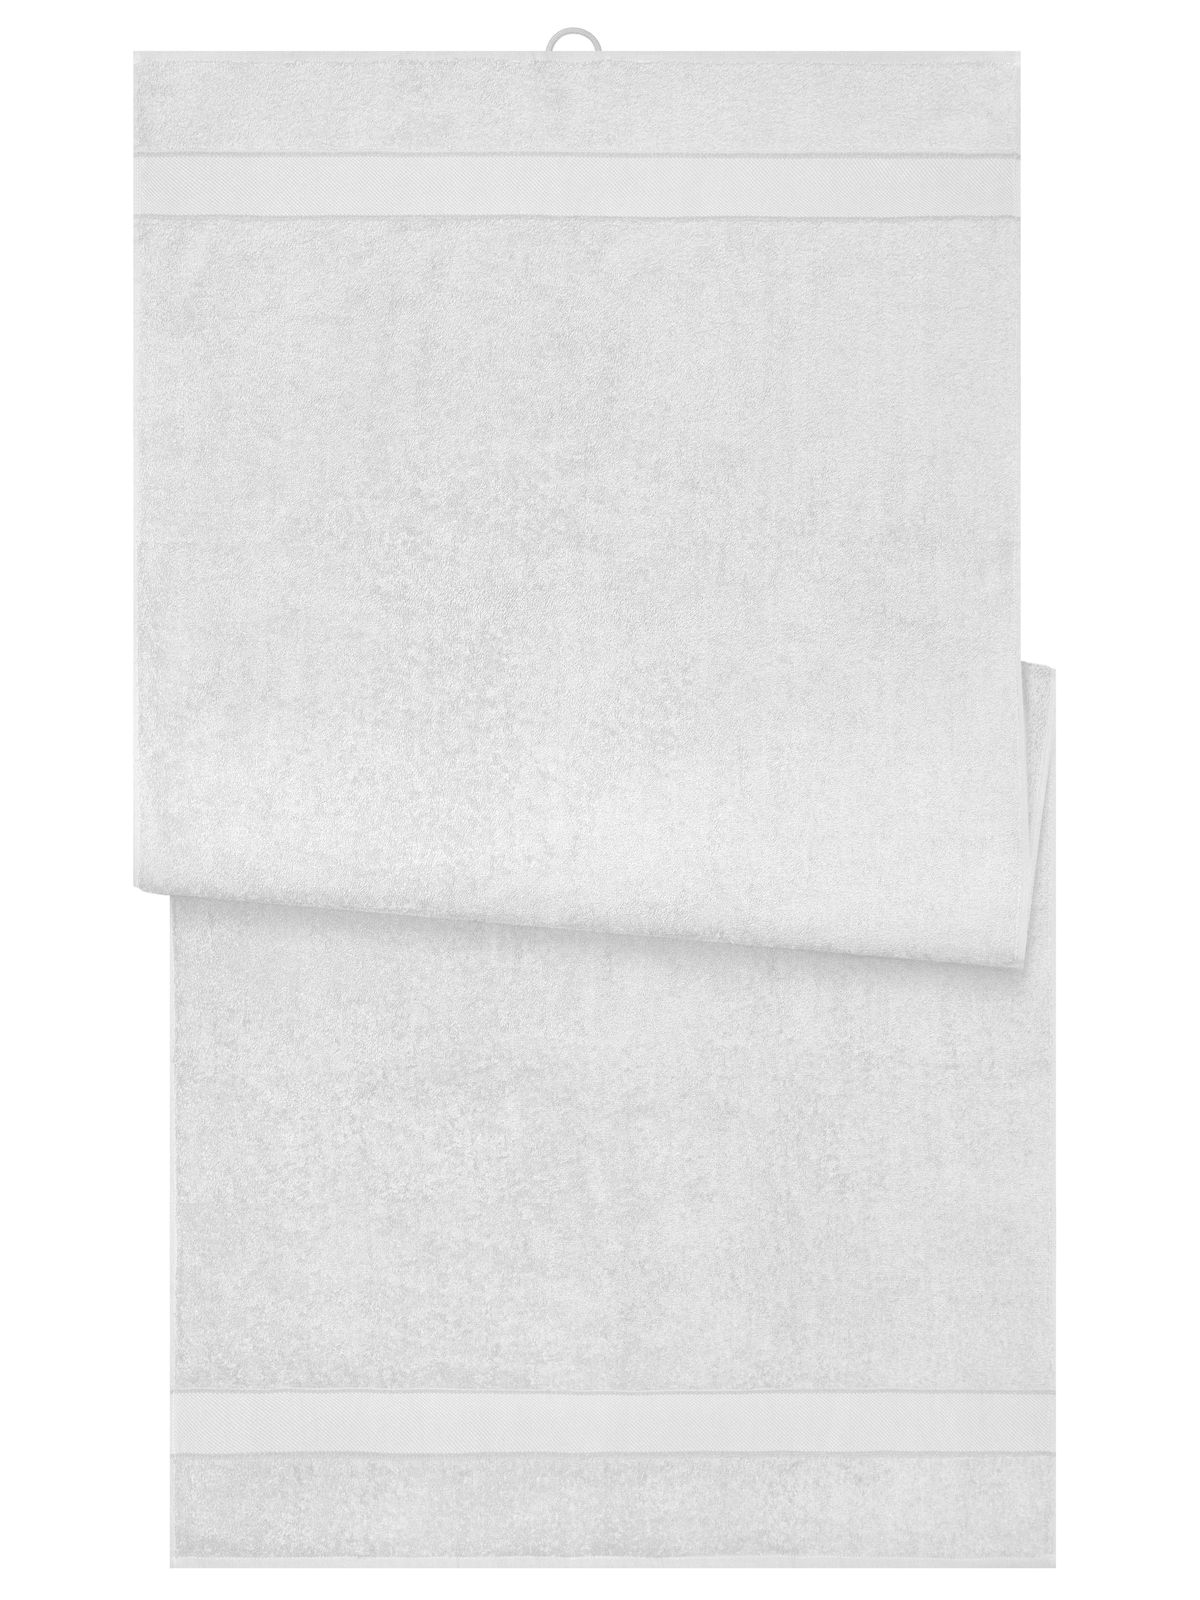 bath-sheet-white.webp